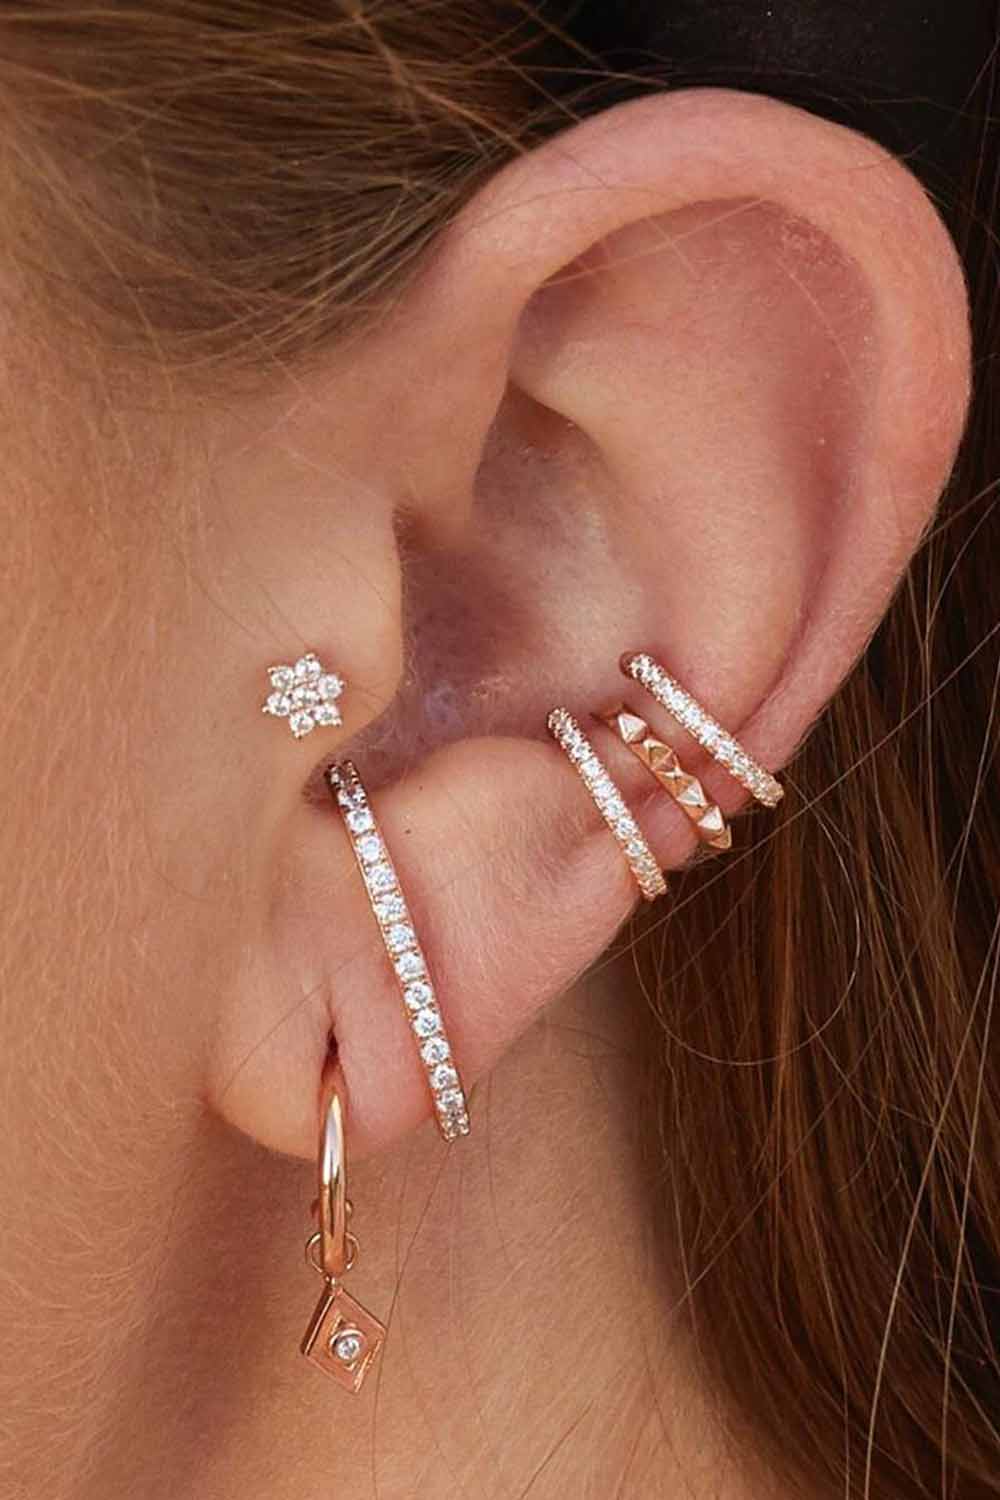 Should Ear Piercings Be Symmetrical? #hugring #earrings